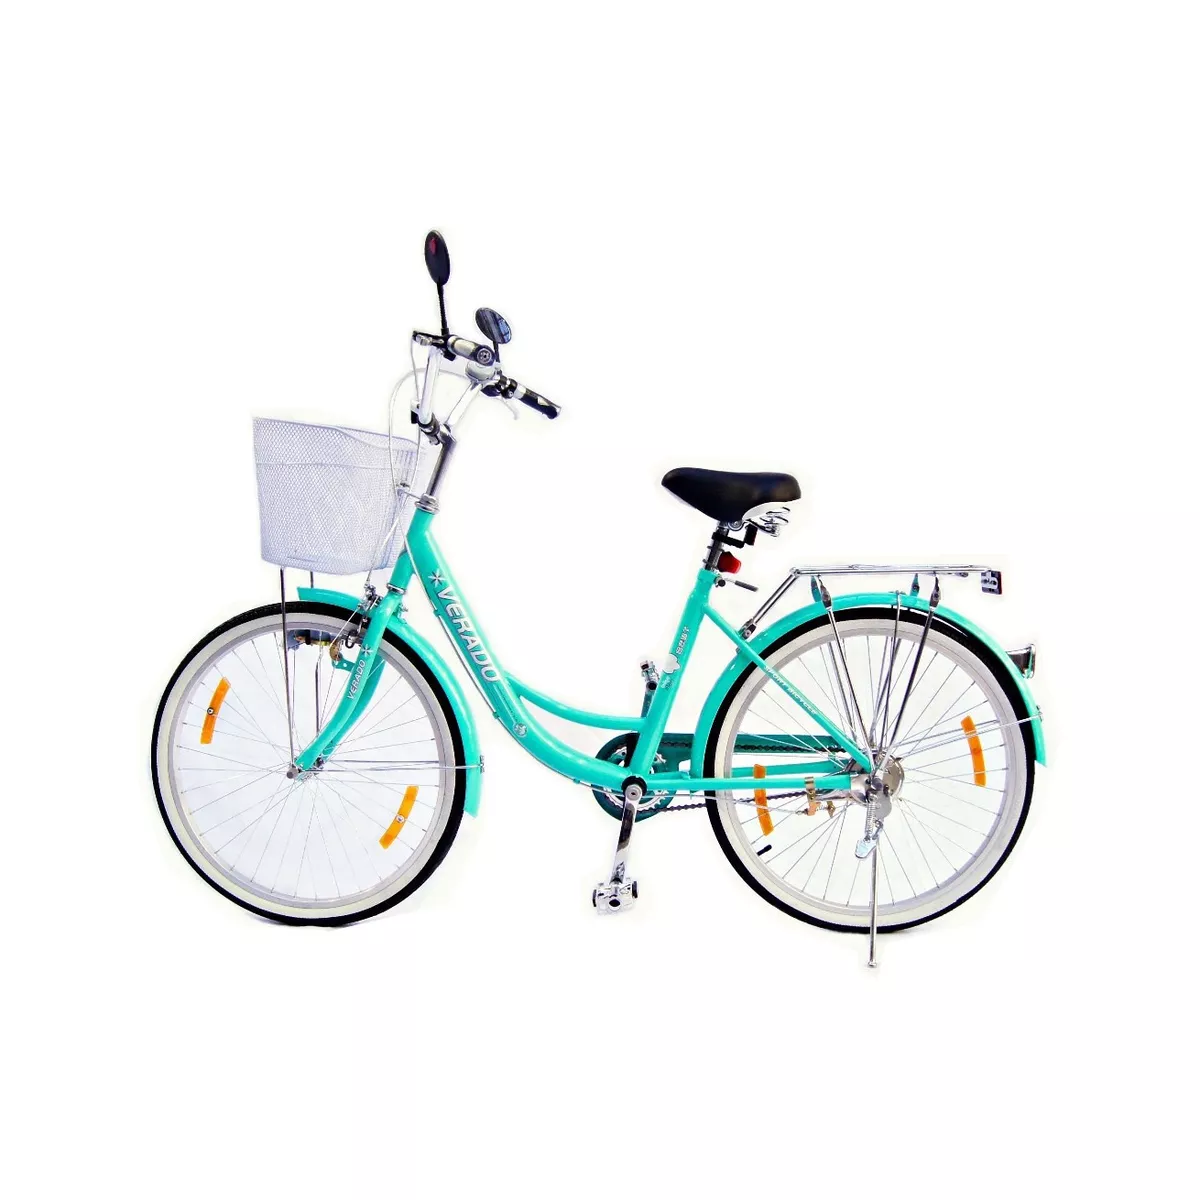 Bicicleta Femenina Verado Lady R26 Color Verde Con Pie De Apoyo